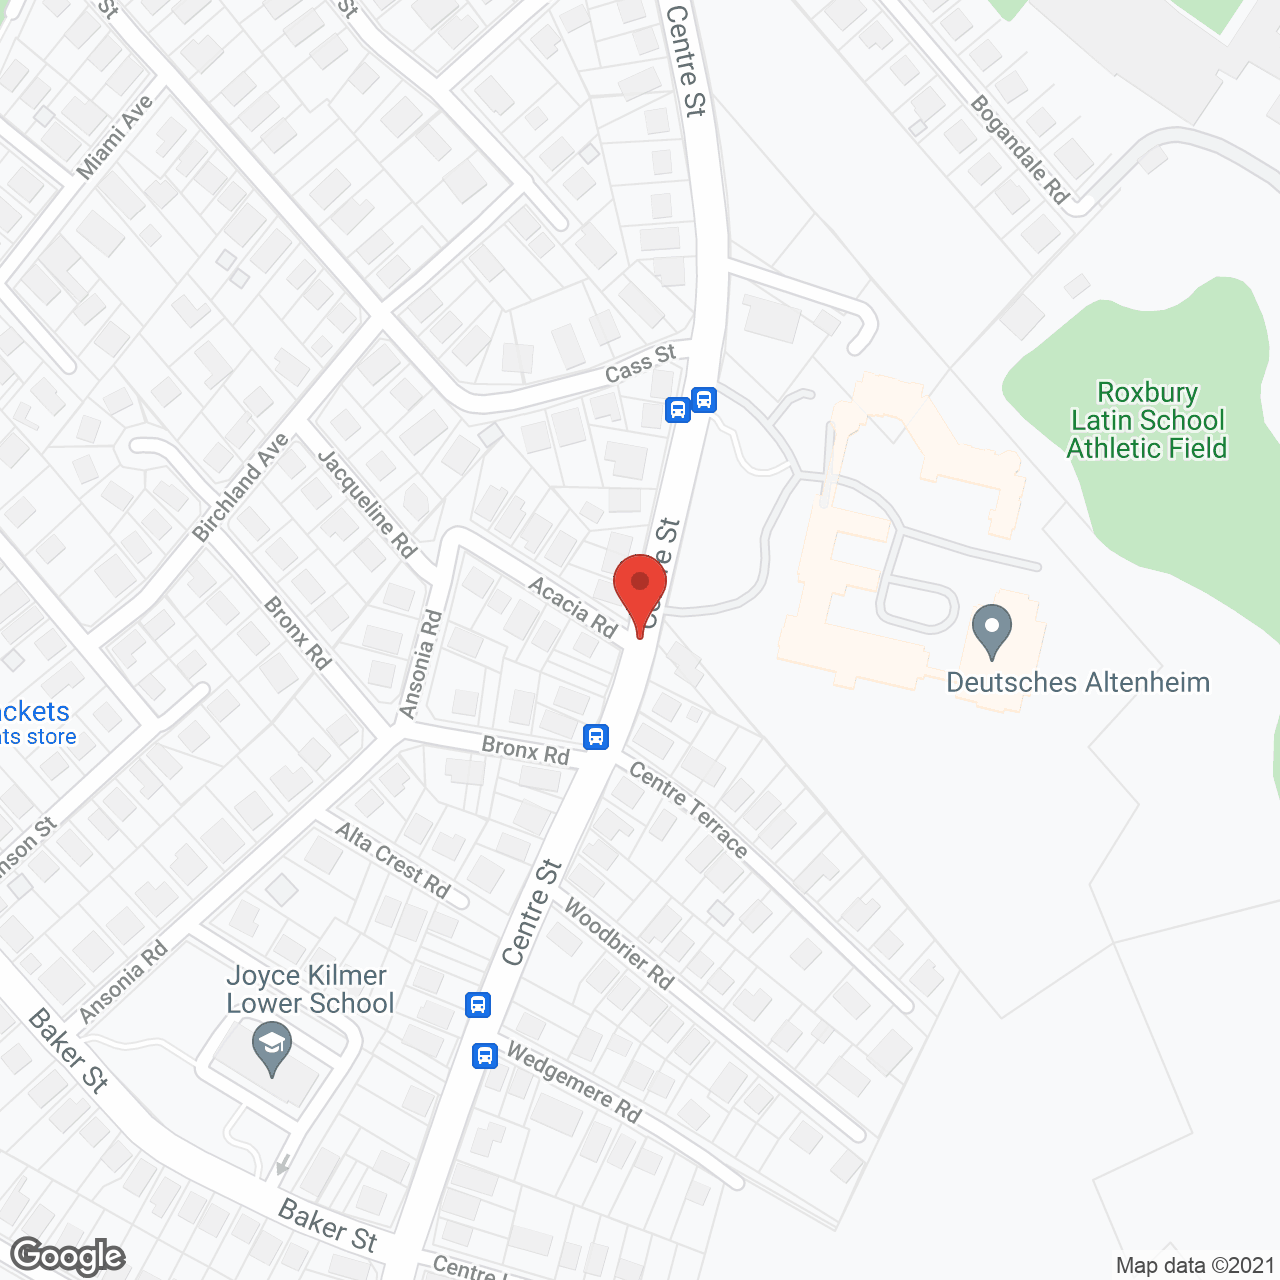 Edelweiss Village in google map